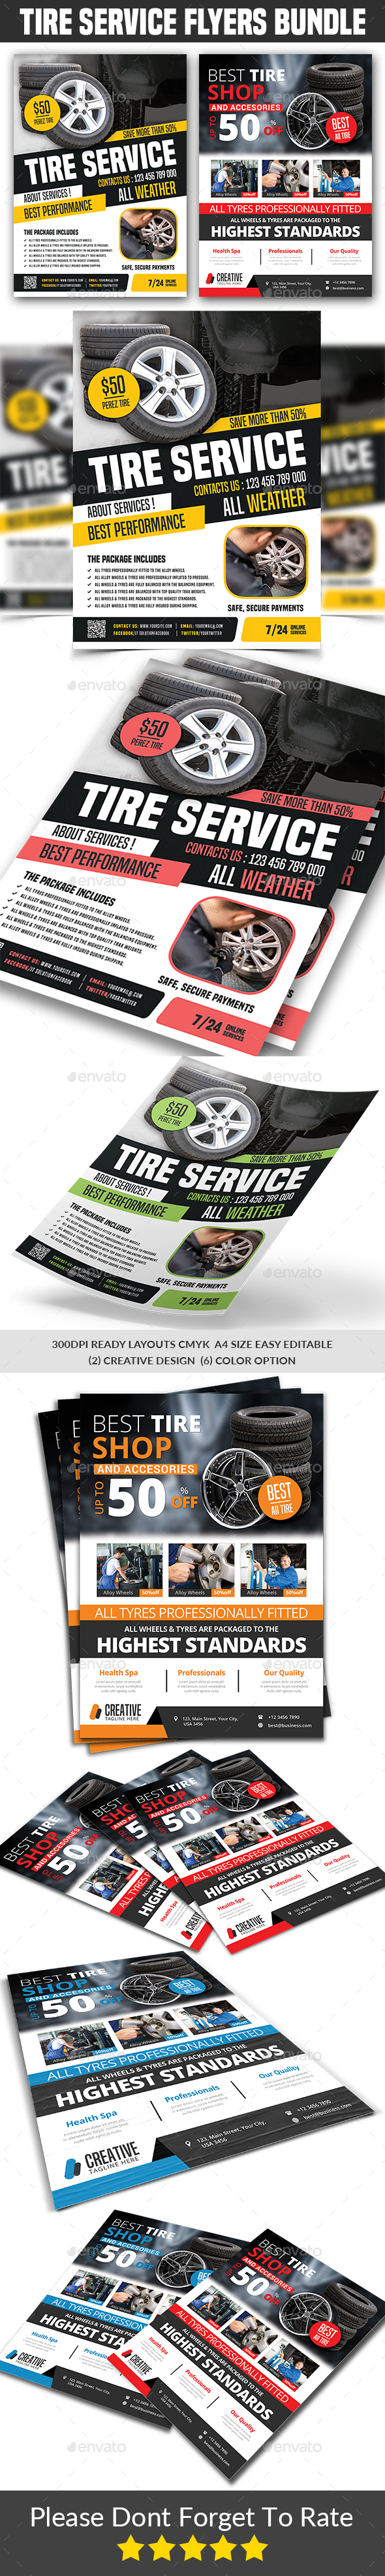 Tires Services Flyers Bundle